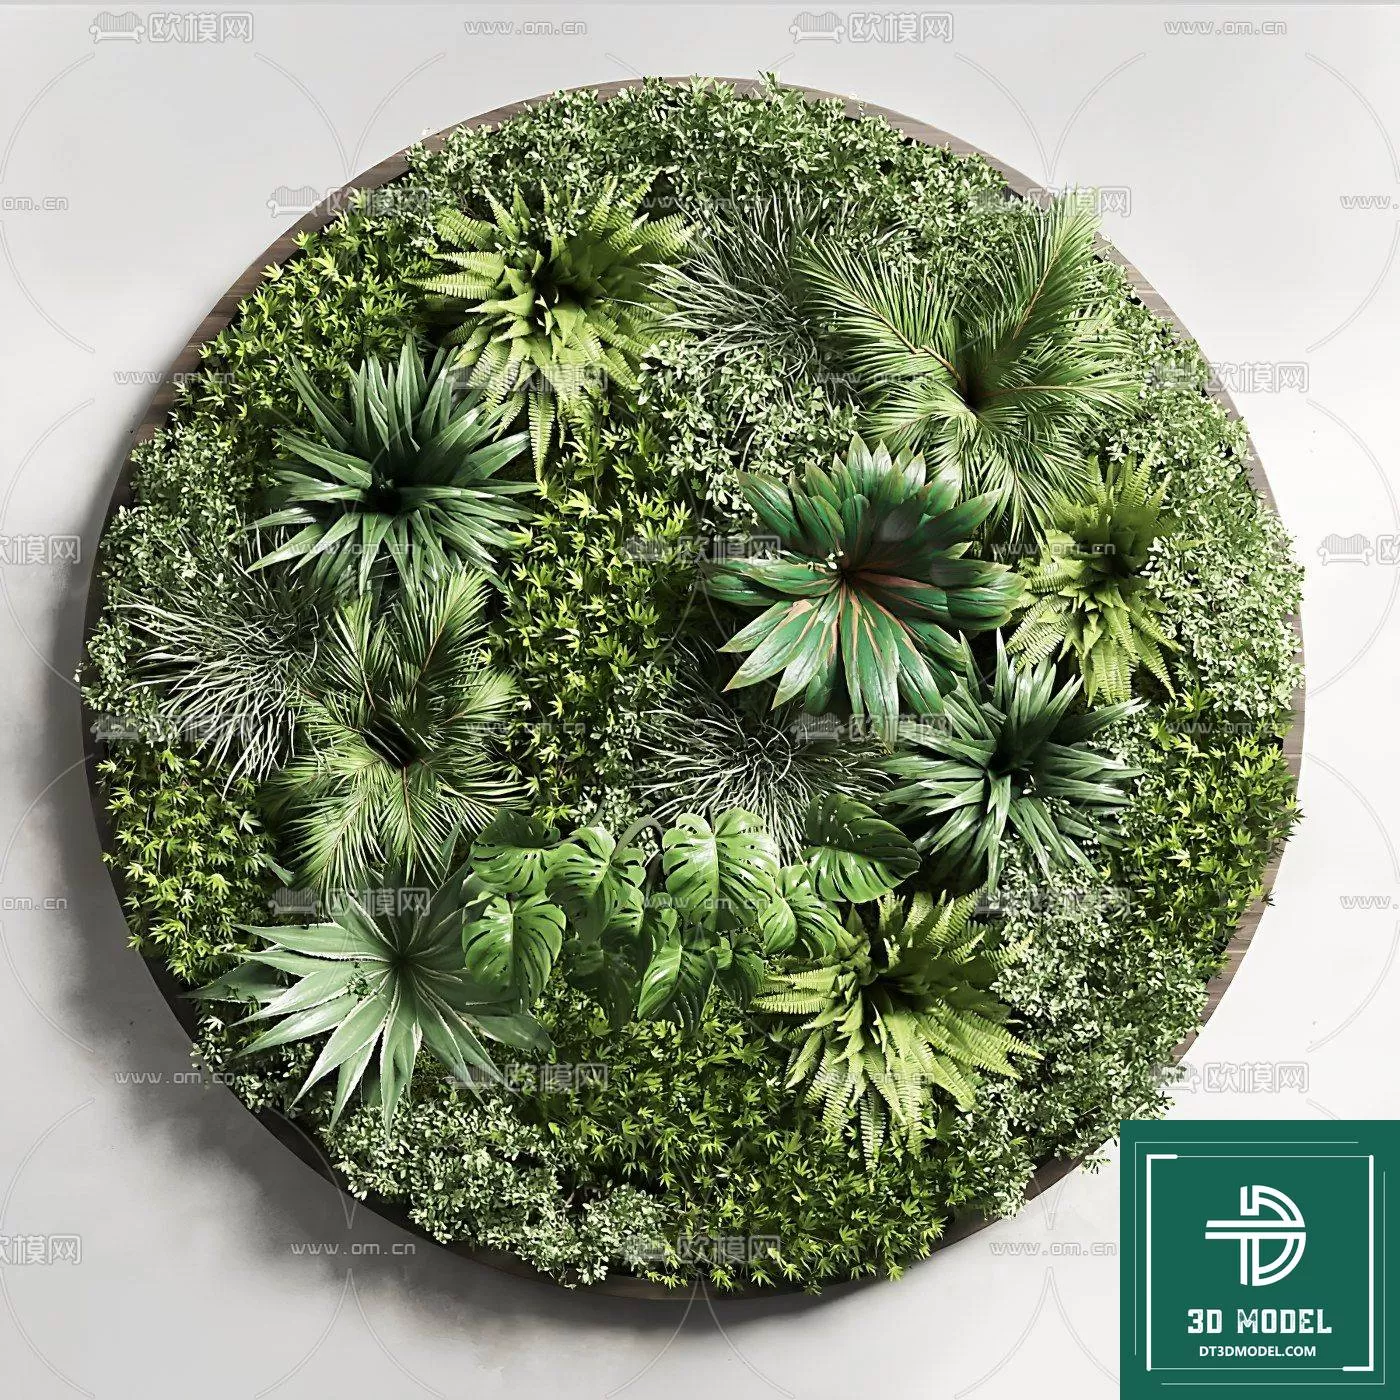 VERTICAL GARDEN – FITOWALL PLANT 3D MODEL – 072